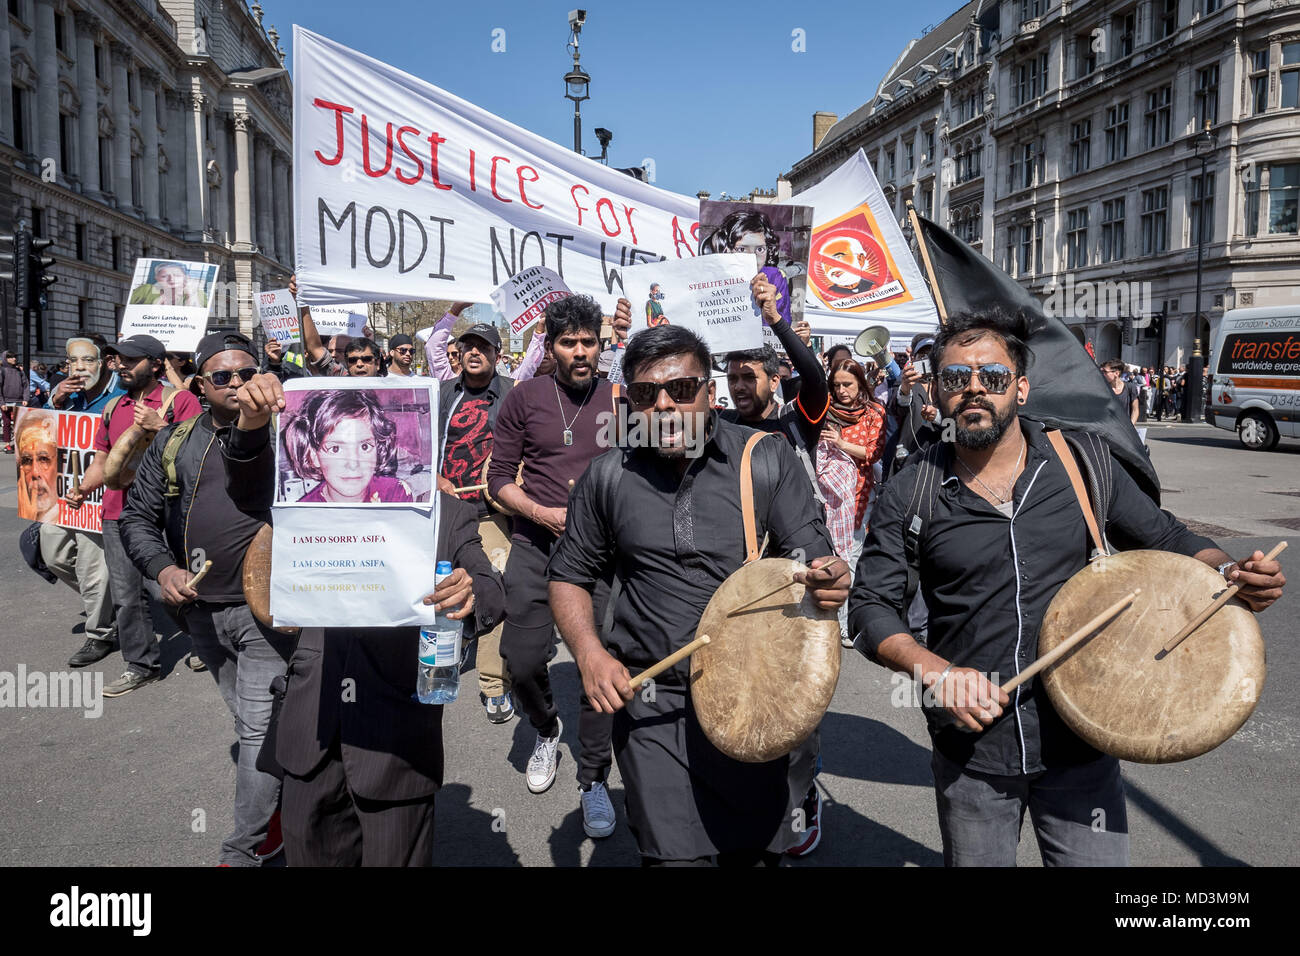 Londres, Reino Unido. 18 de abril de 2018. Misa Anti-Modi las protestas en la Plaza del Parlamento contra Narendra Modi, sirviendo el actual Primer Ministro de la India, quien se encuentra de visita en Londres como parte de la Cumbre de Jefes de Gobierno del Commonwealth. Crédito: Guy Corbishley/Alamy Live News Foto de stock